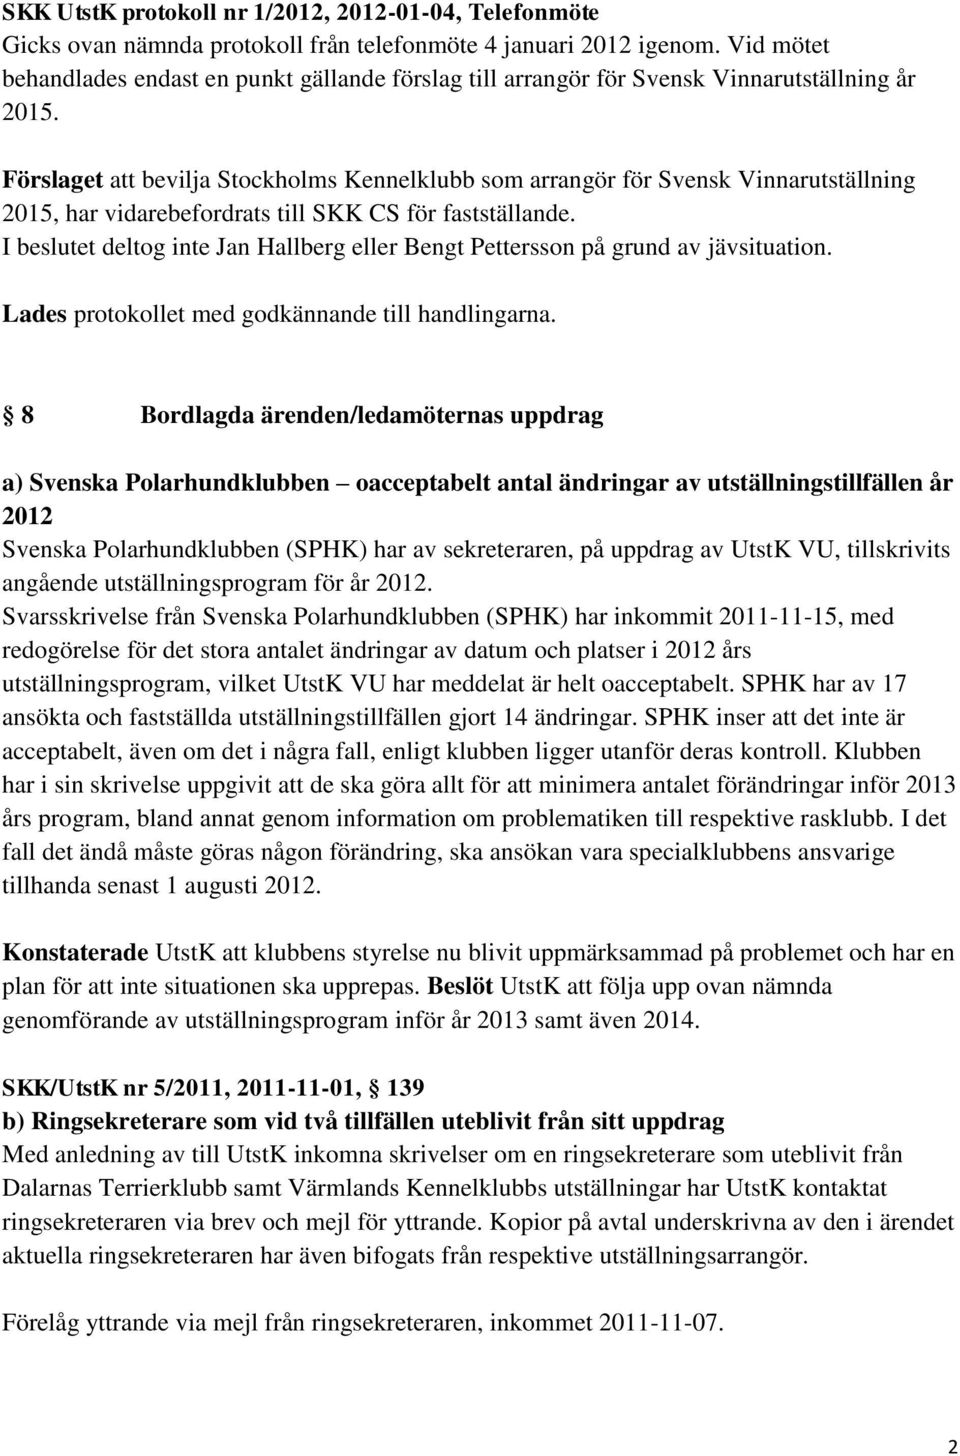 Förslaget att bevilja Stockholms Kennelklubb som arrangör för Svensk Vinnarutställning 2015, har vidarebefordrats till SKK CS för fastställande.